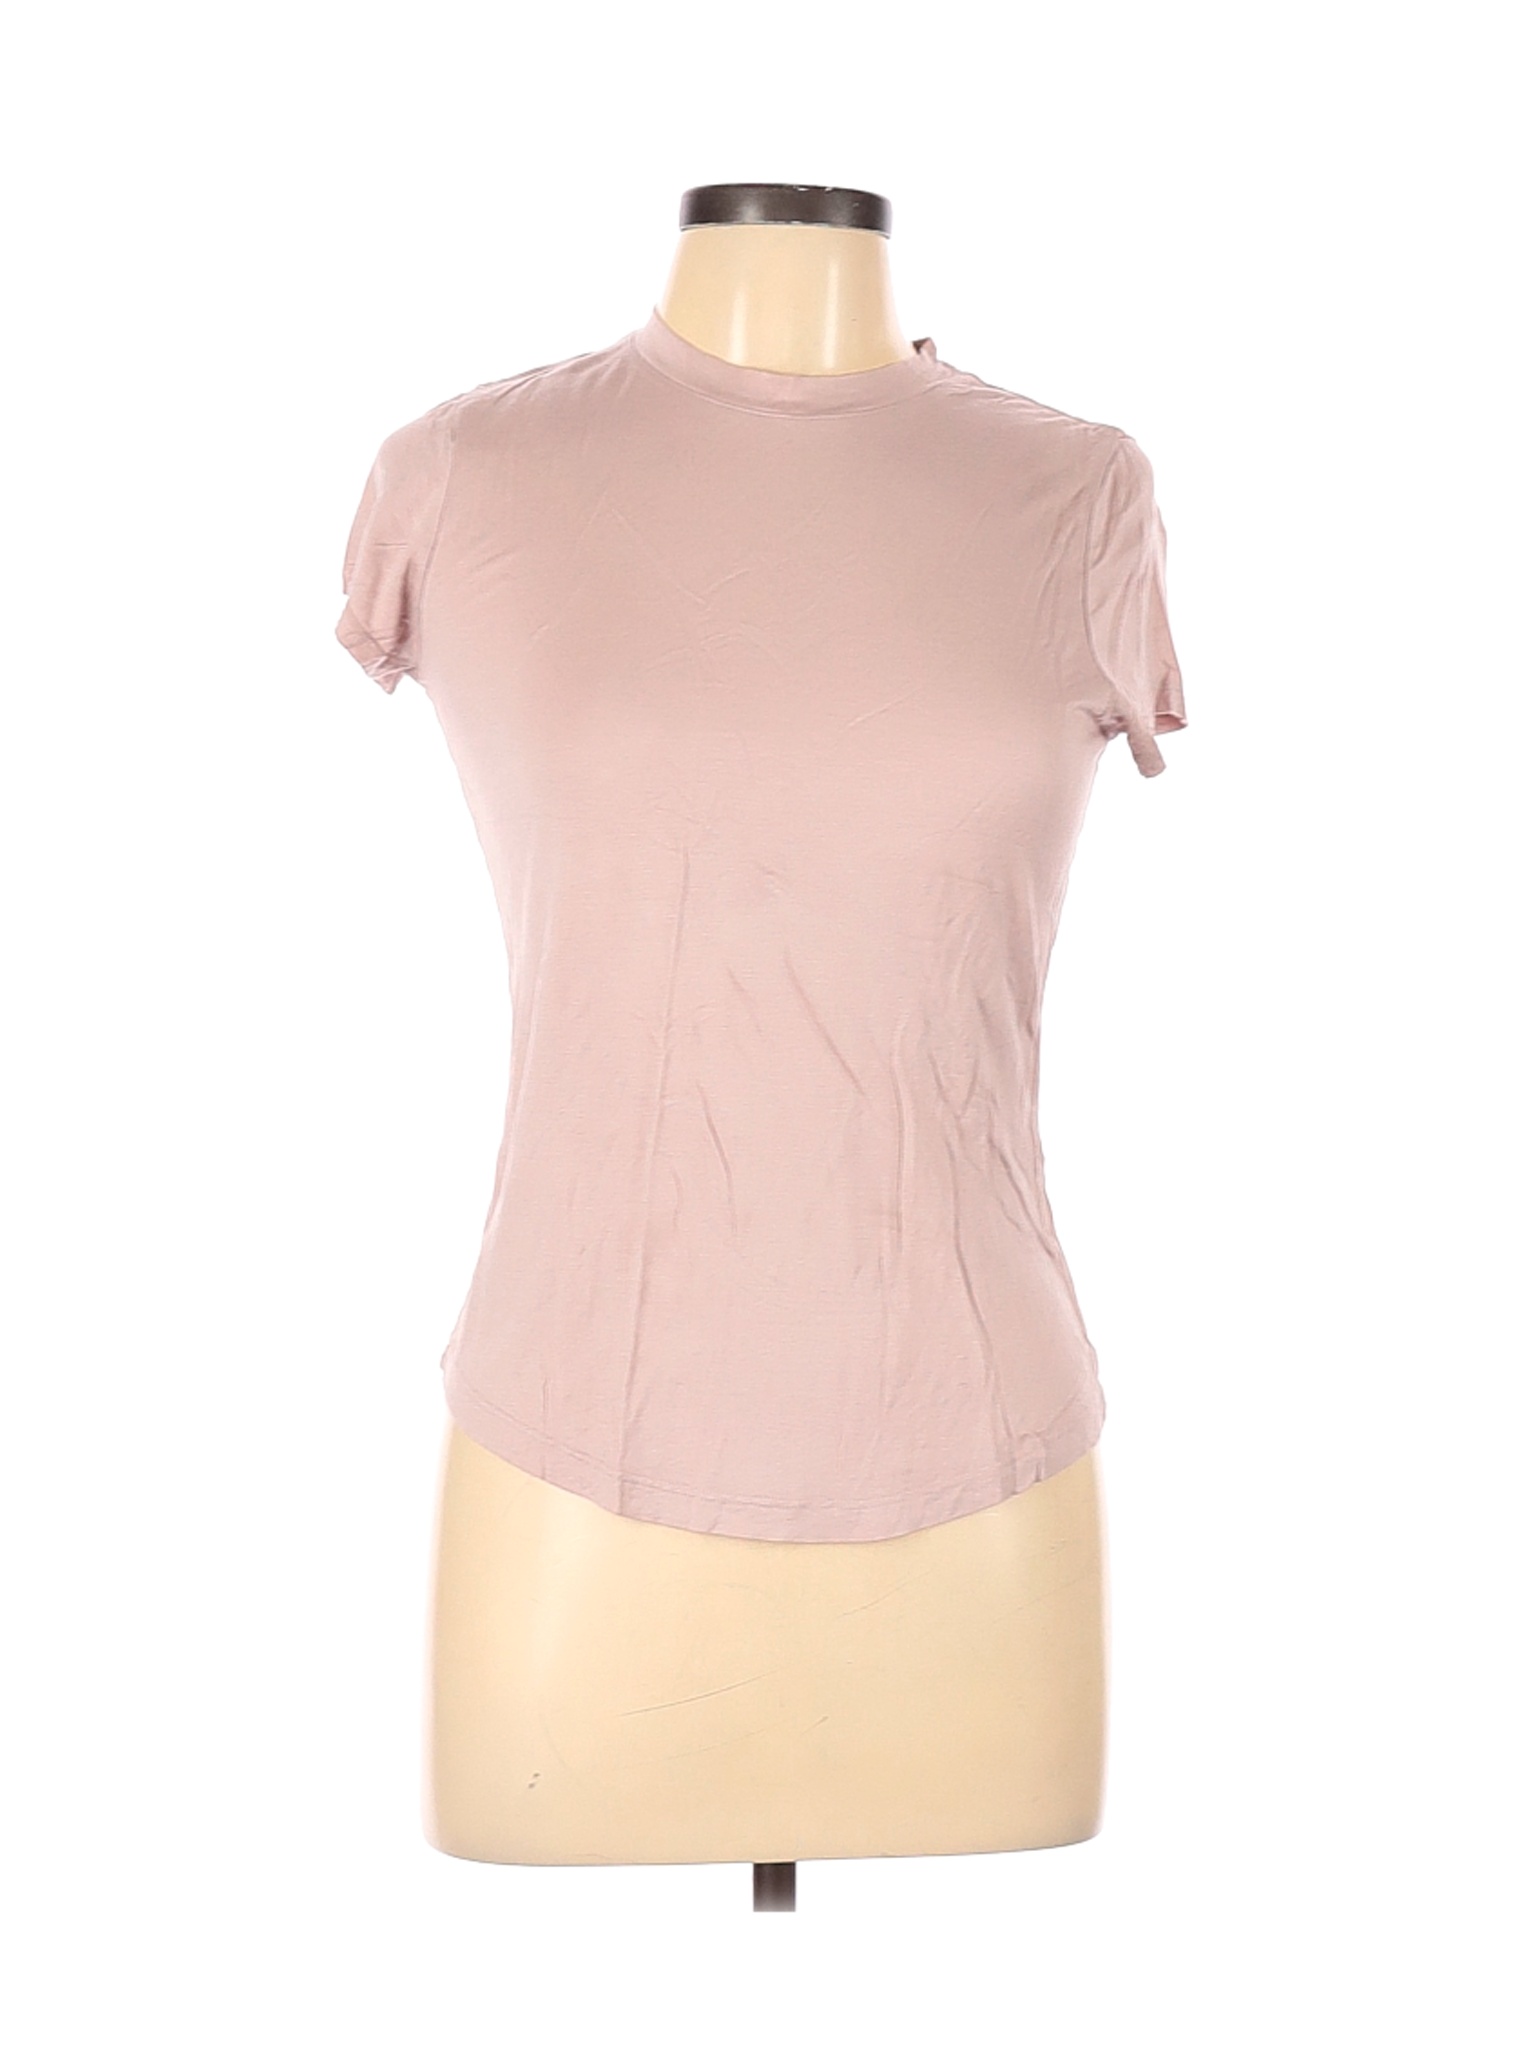 H&M Women Pink Short Sleeve T-Shirt M | eBay